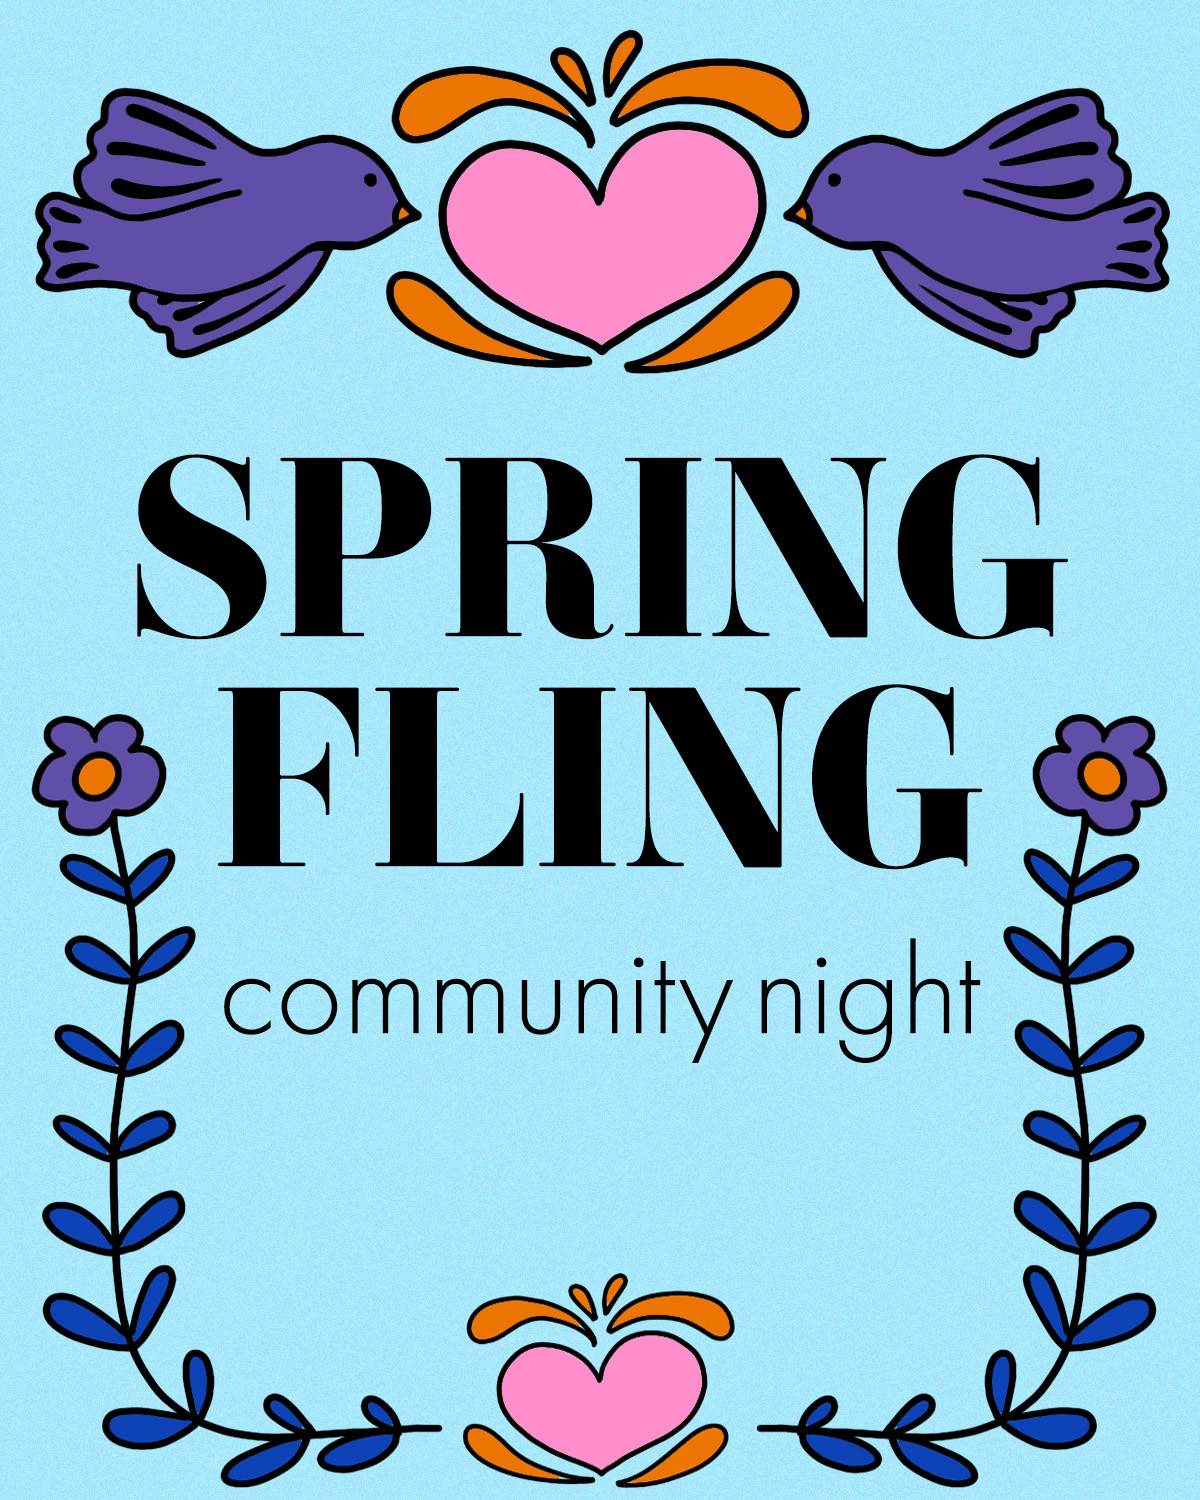 Spring Fling Community Night